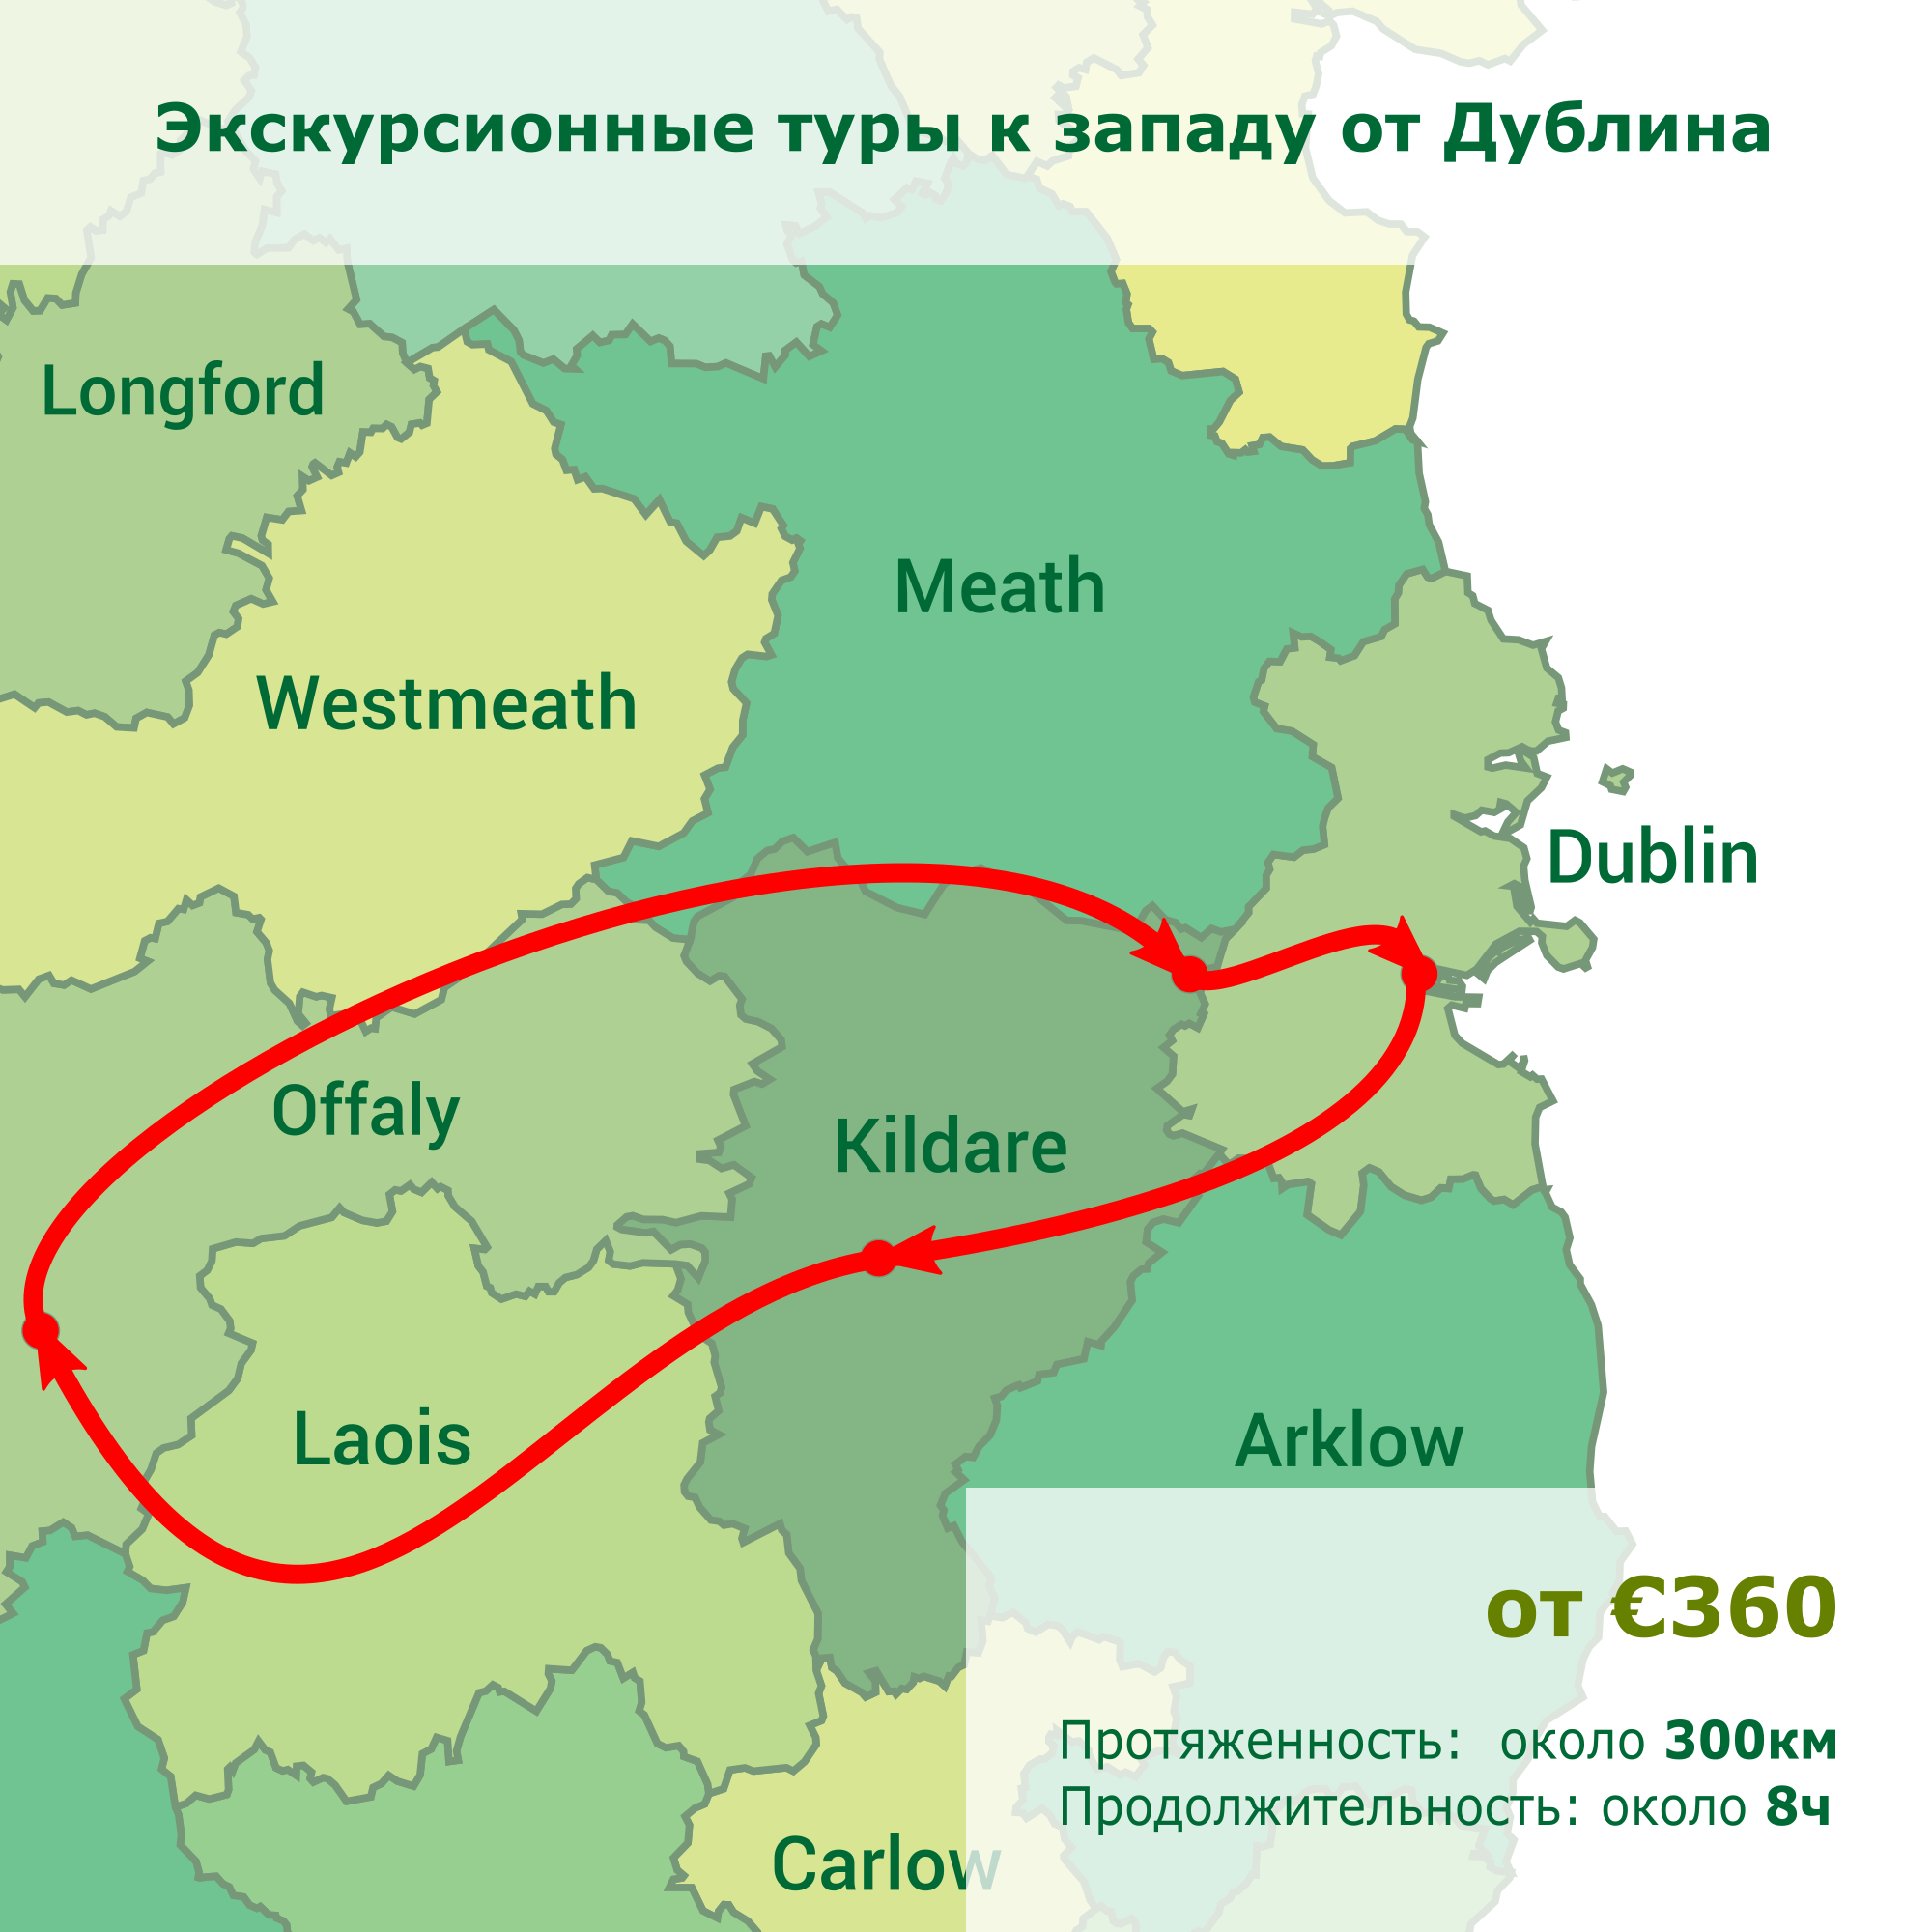 Экскурсионные туры к западу от Дублина